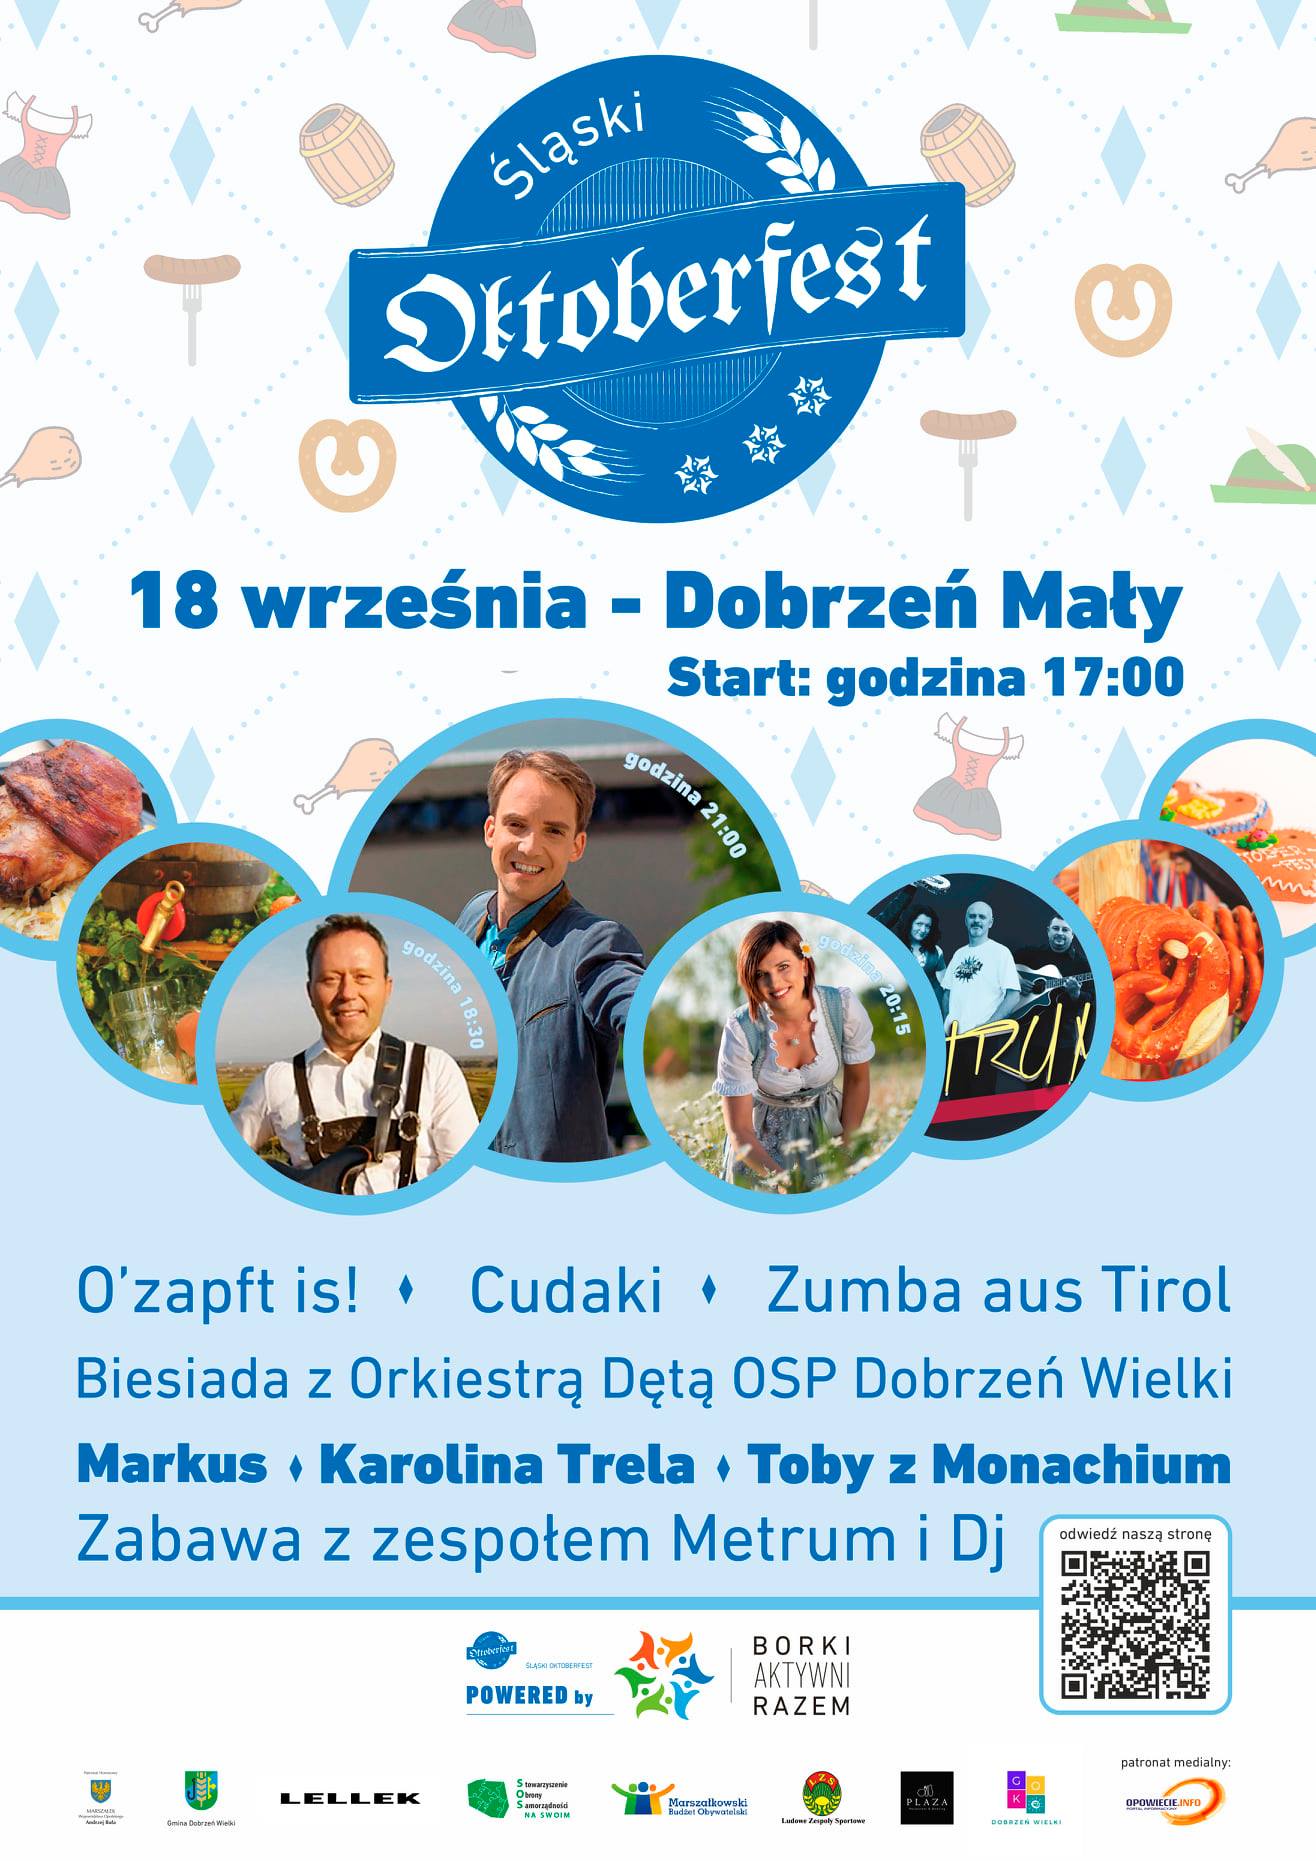 Śląski Oktoberfest 2021 już w najbliższą sobotę